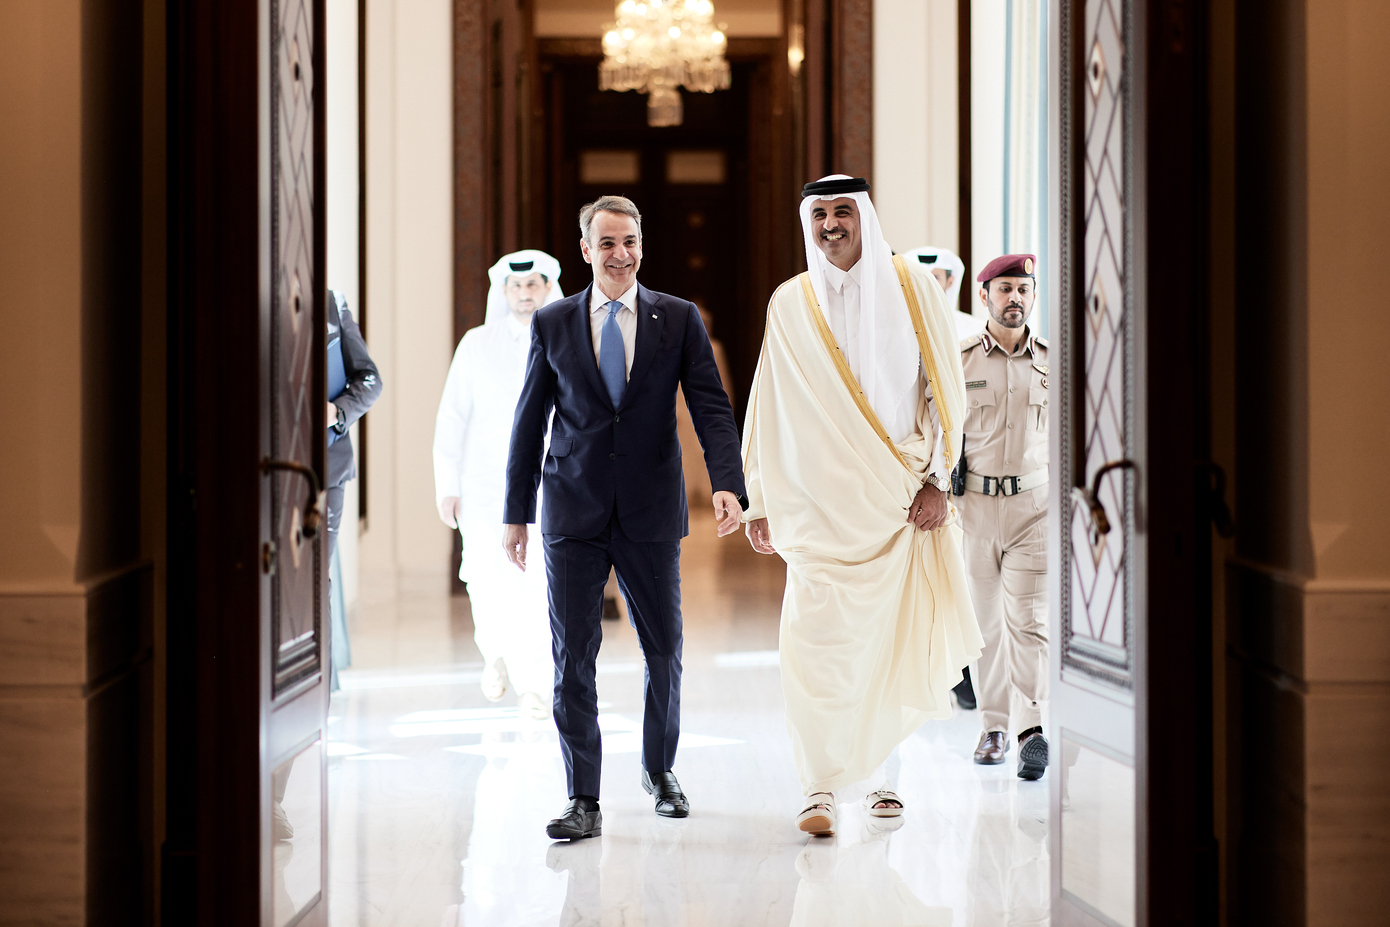 Επενδύσεις και ενέργεια στη συνάντηση του Κυριάκου Μητσοτάκη με τον Εμίρη του Κατάρ &#8211; Συνεχίζονται οι πυρετώδεις προεκλογικοί ρυθμοί